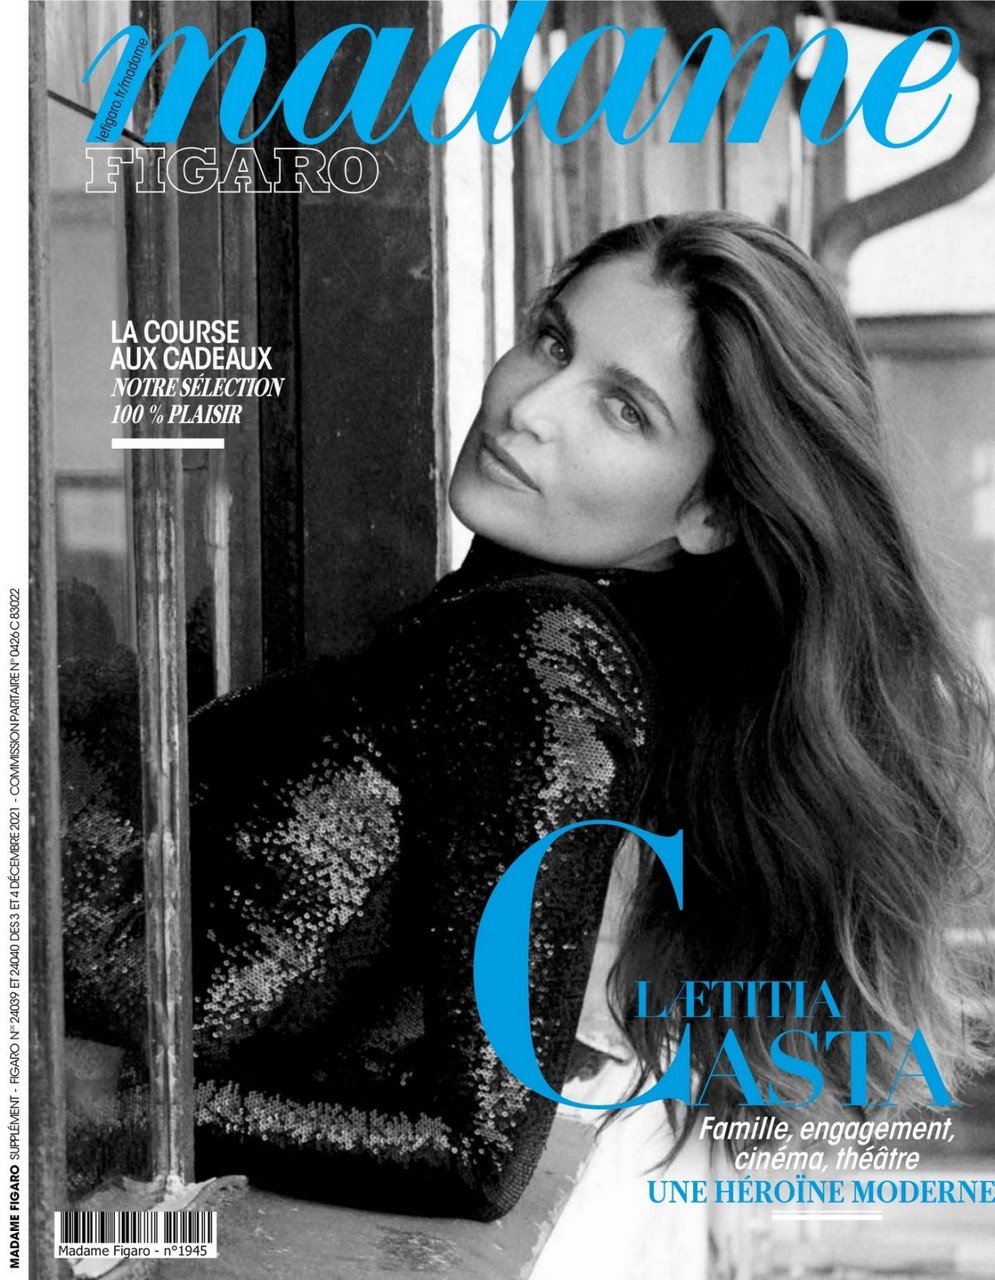 Laetitia Casta Madame Figaro Magazine December